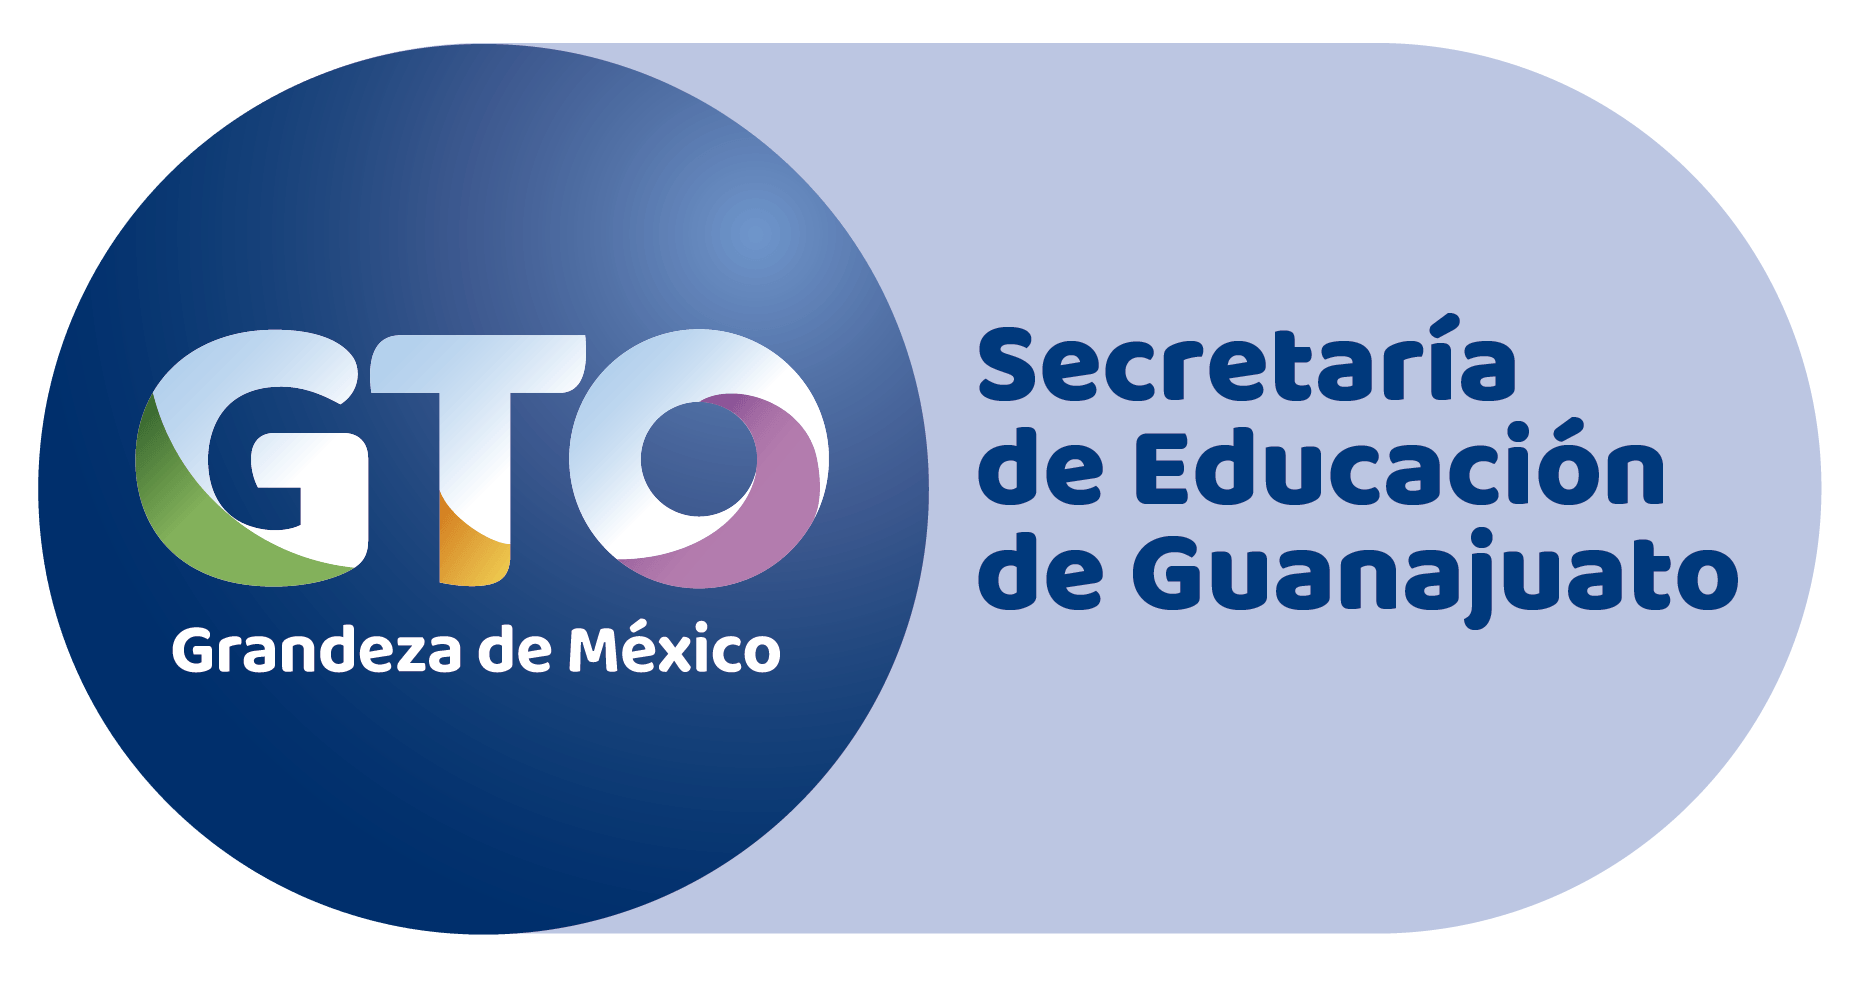 Guanajuato Logo - CECyTE Guanajuato